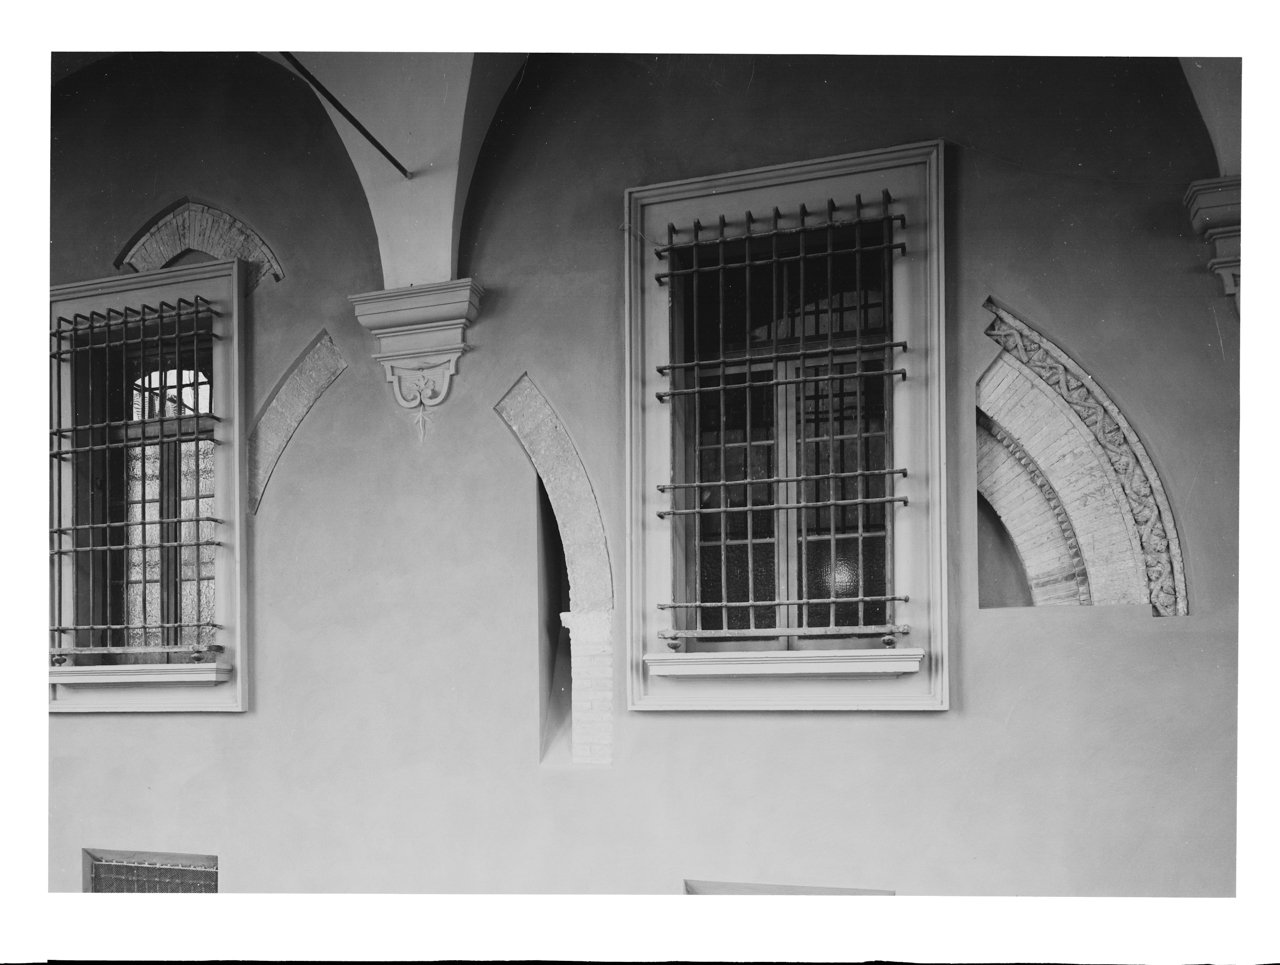 Elementi architettonici - Finestre - Porte - Monofore - Archi - Cornici (negativo, insieme) di Zagnoli, Alfonso (XX)